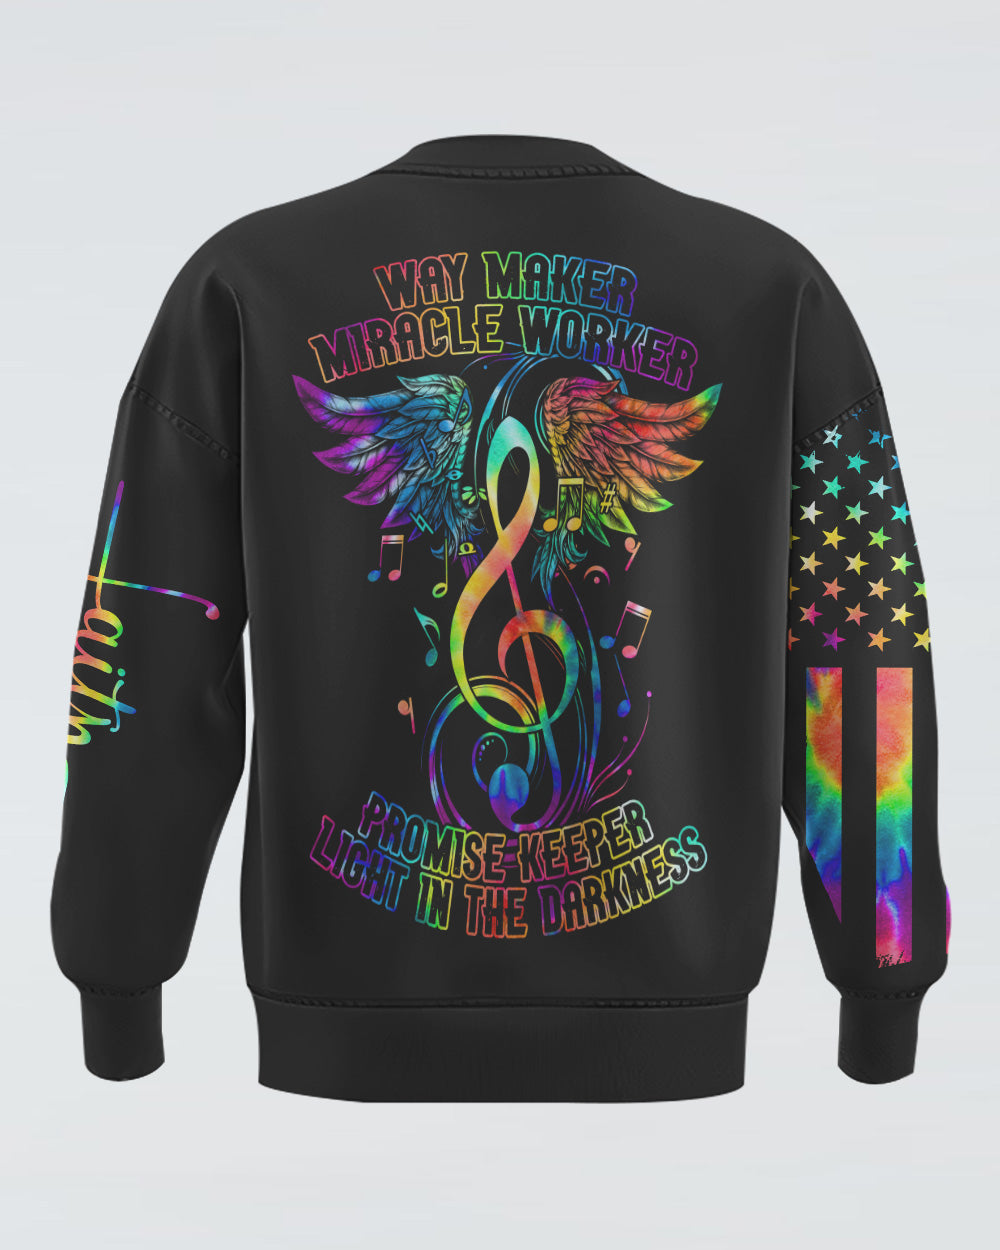 Way Maker Miracle Worker Music Wings Cross Tie Dye Women's Christian Sweatshirt